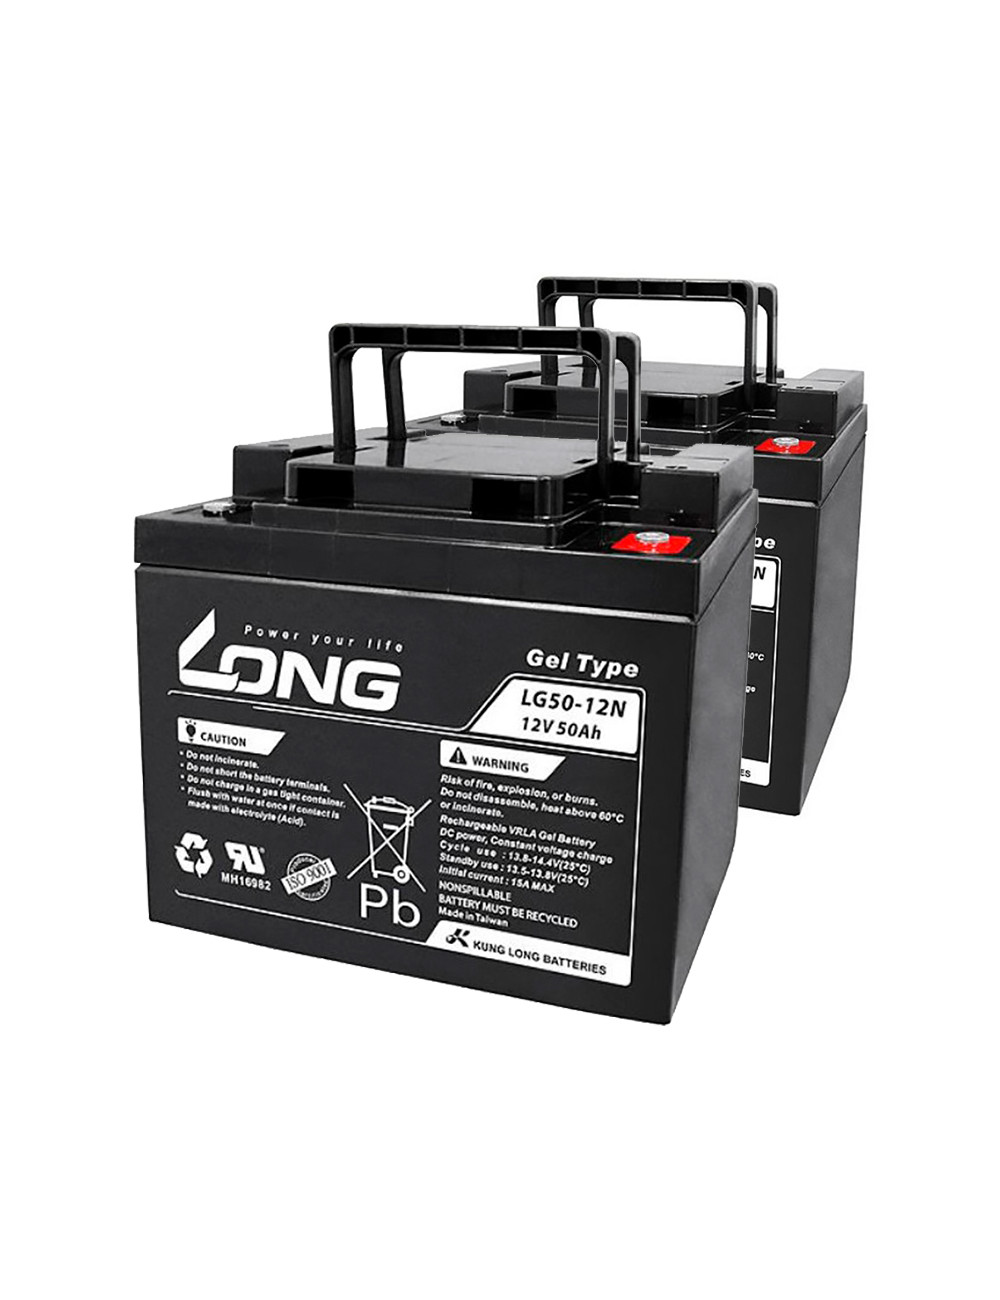 Pacote 2 baterias de gel para Quickie Q200R com basculação de Sunrise Medical de 12V 50Ah C20 ciclo profundo Long LG50-12N - 1